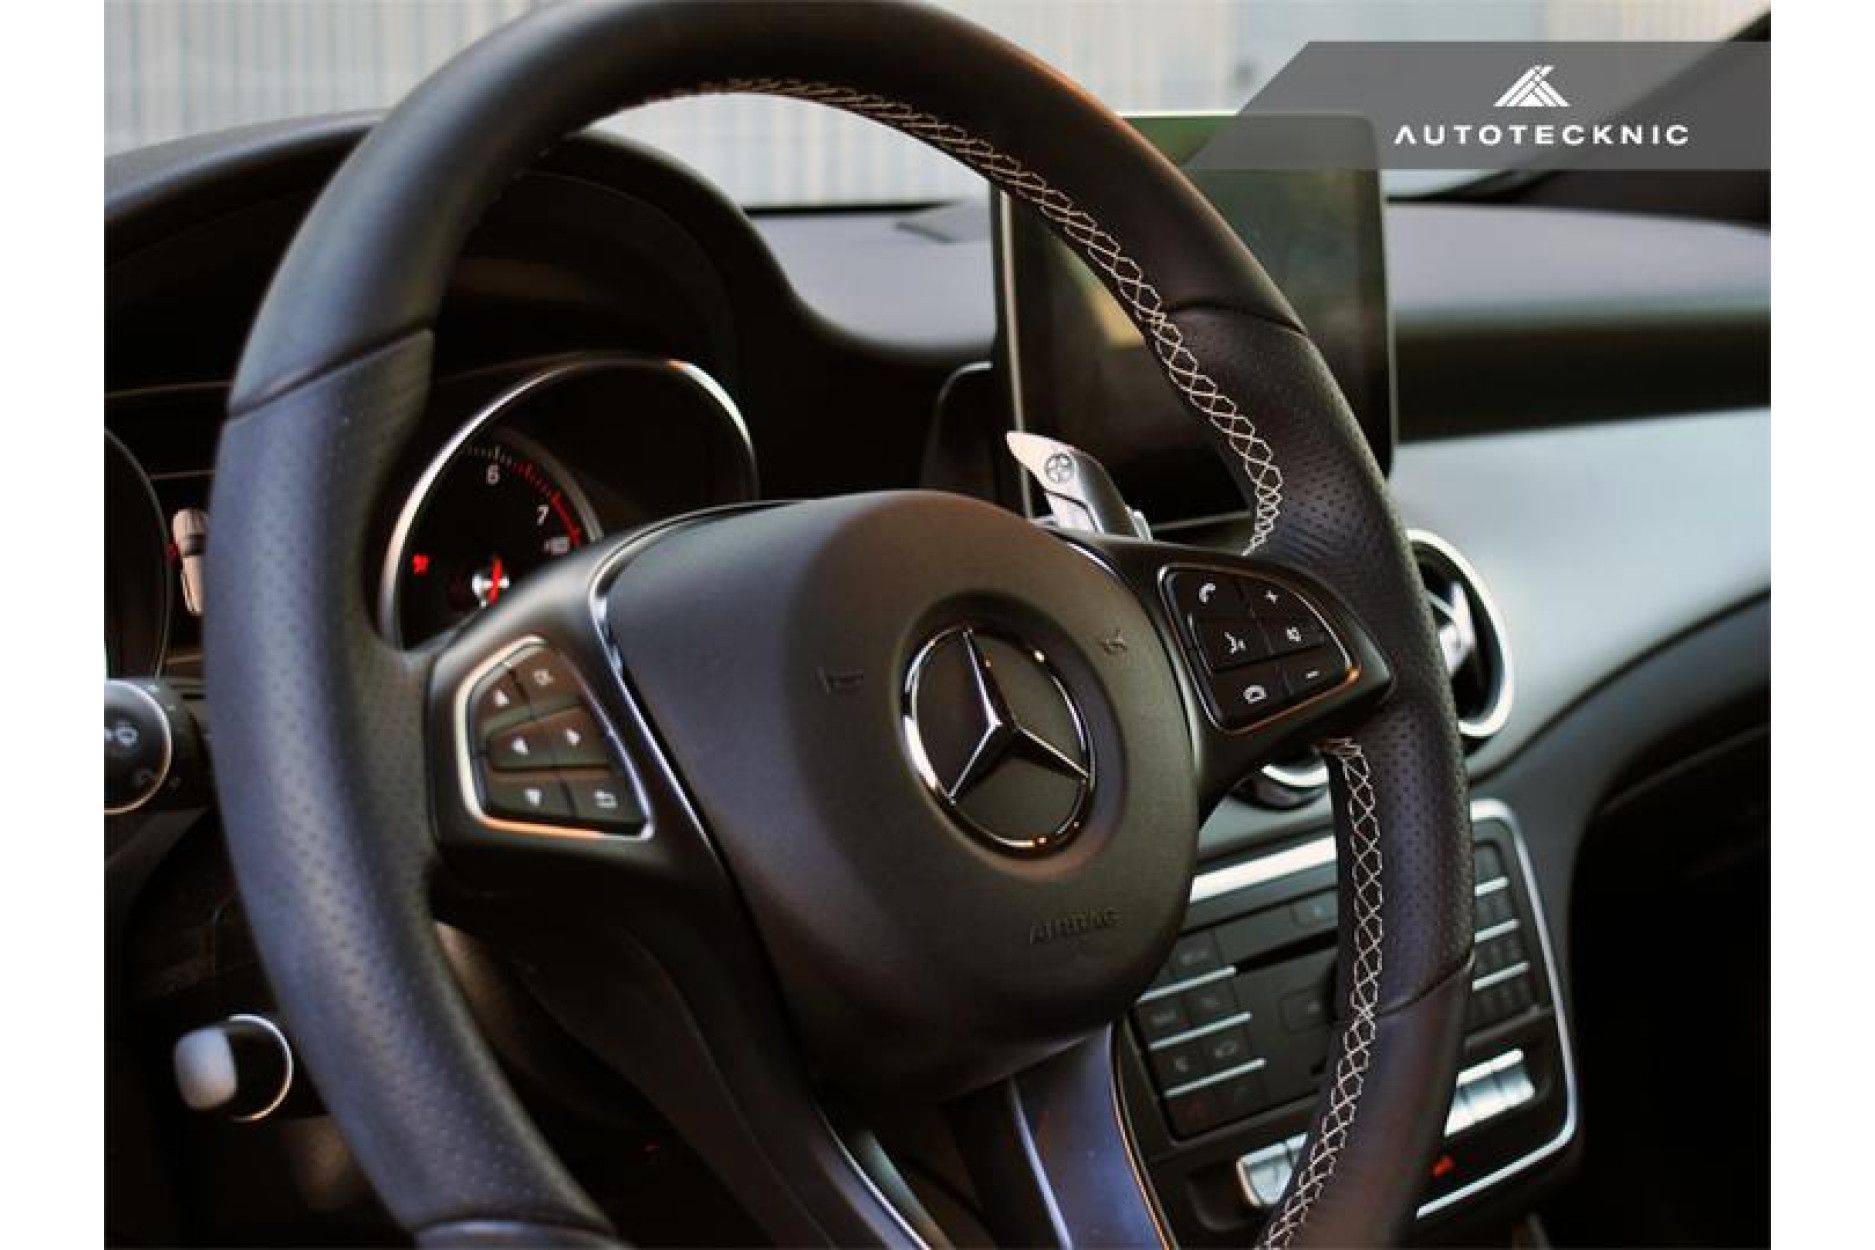 Autotecknic Aluminium Schaltwippen für Mercedes Benz kein AMG Silver Alloy  - online kaufen bei CFD